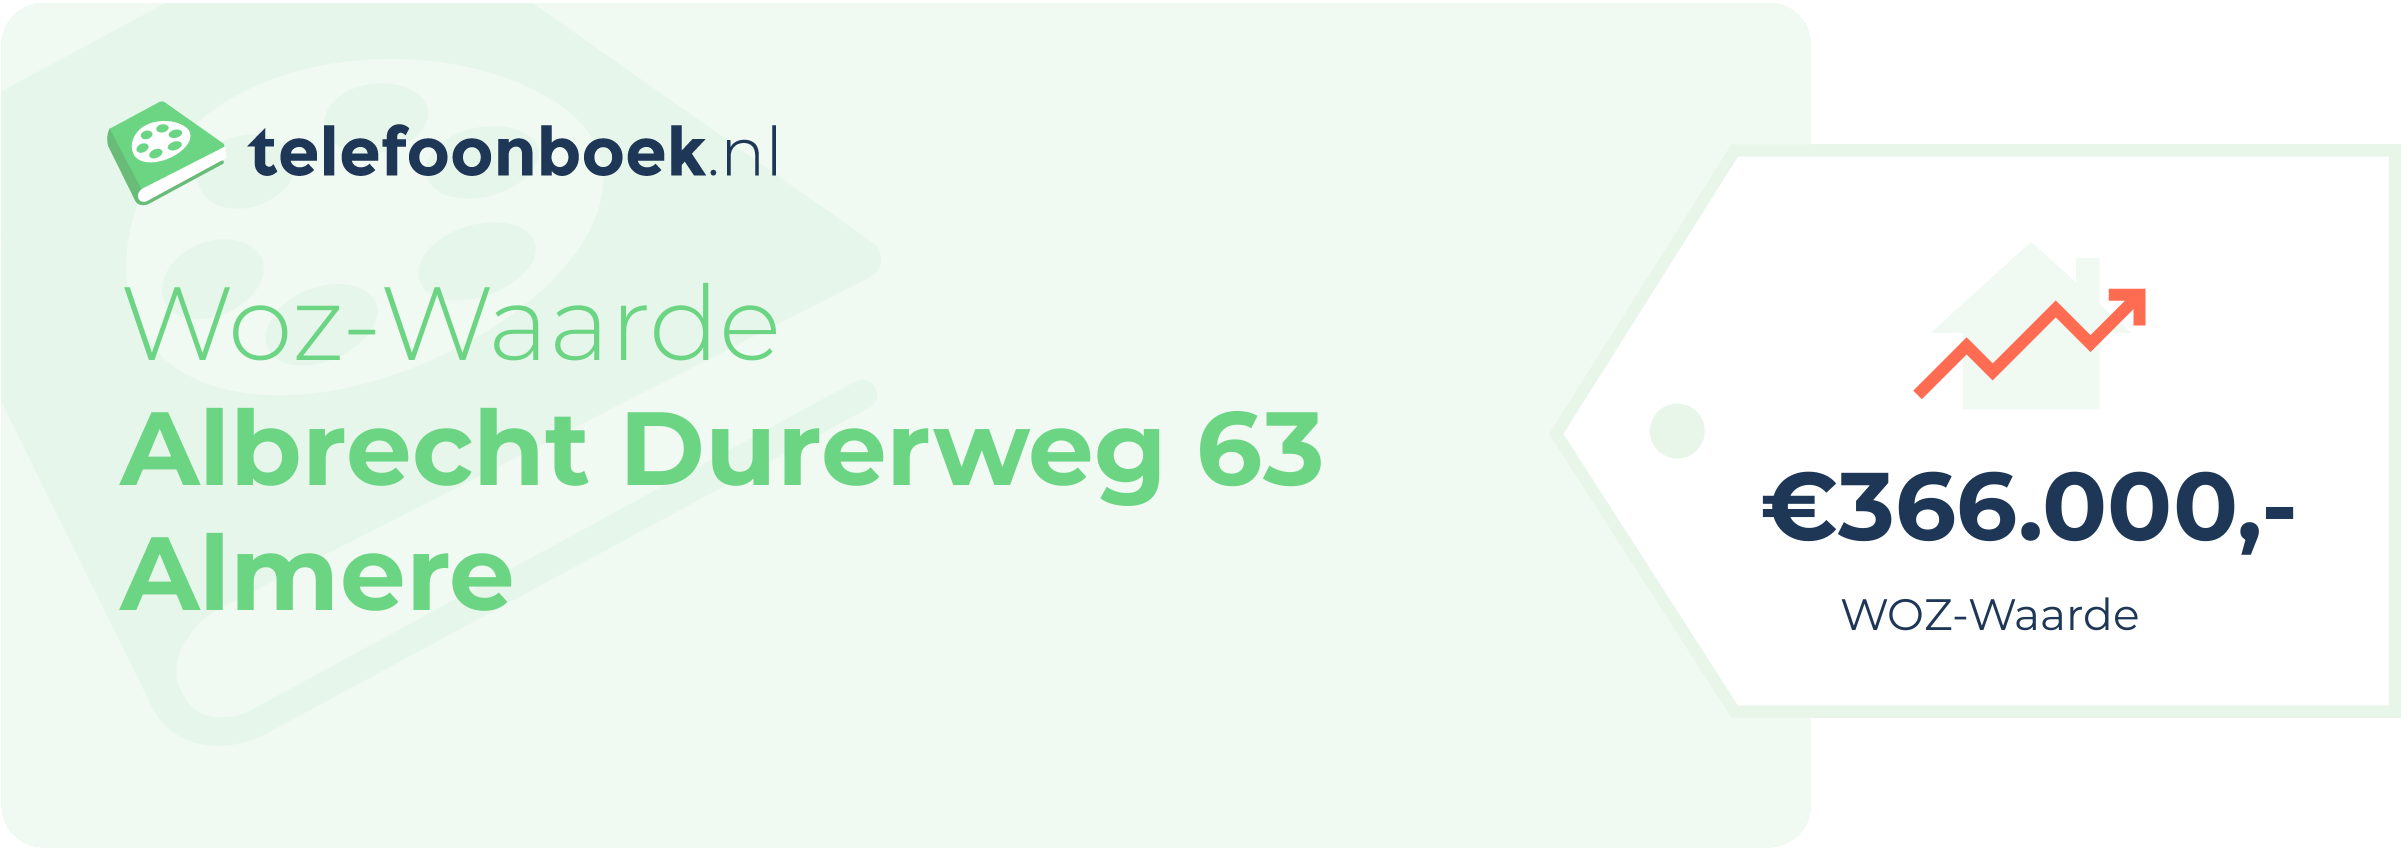 WOZ-waarde Albrecht Durerweg 63 Almere